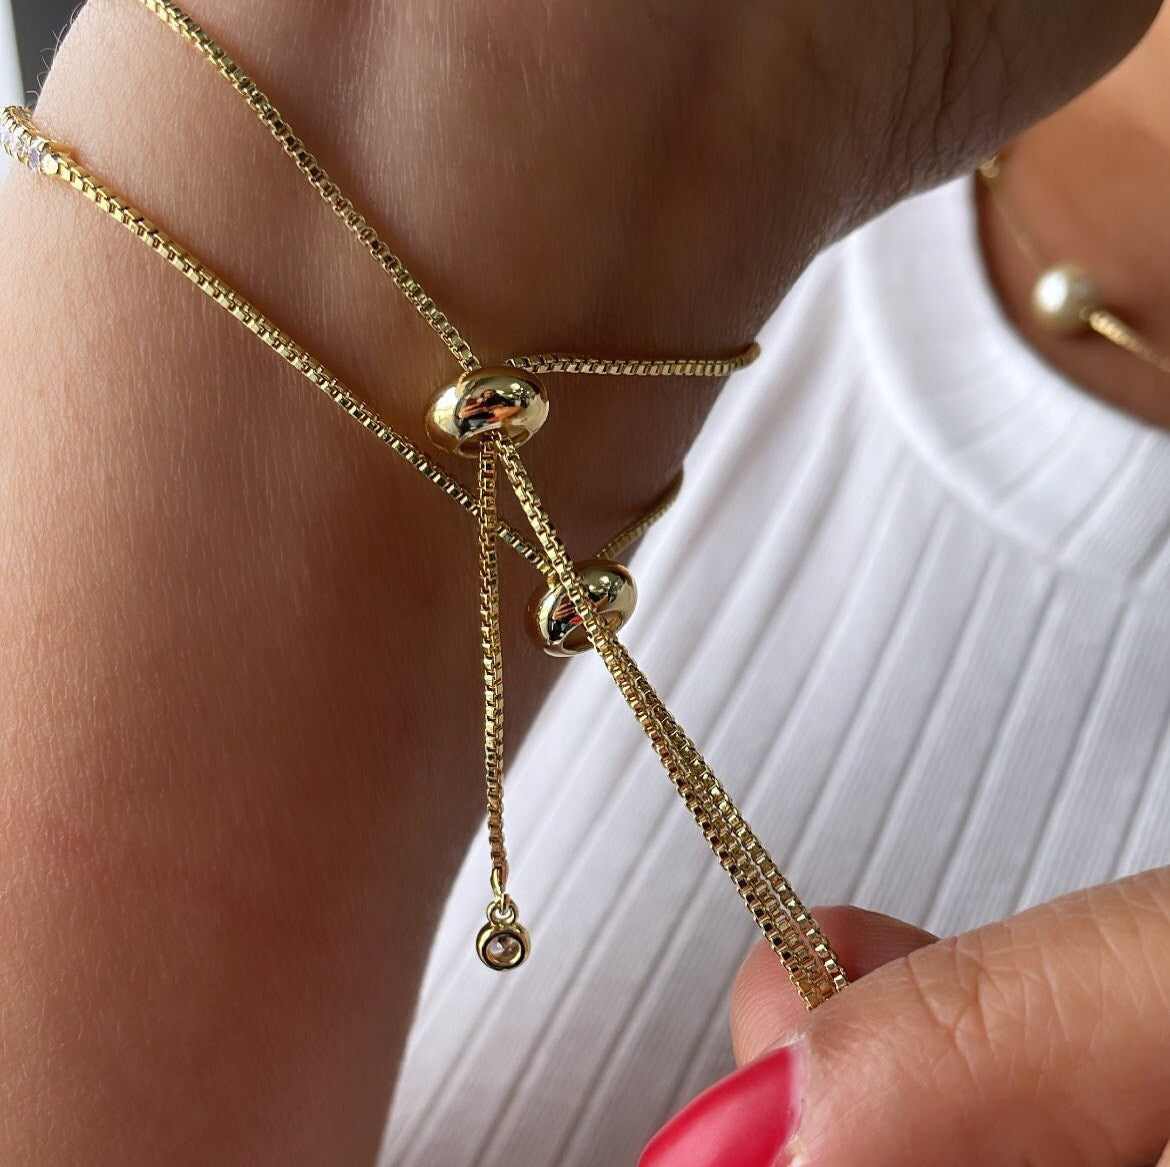 18k Gold Filled Adjustable Tennis Bracelet With CZ Flower Charm In Center